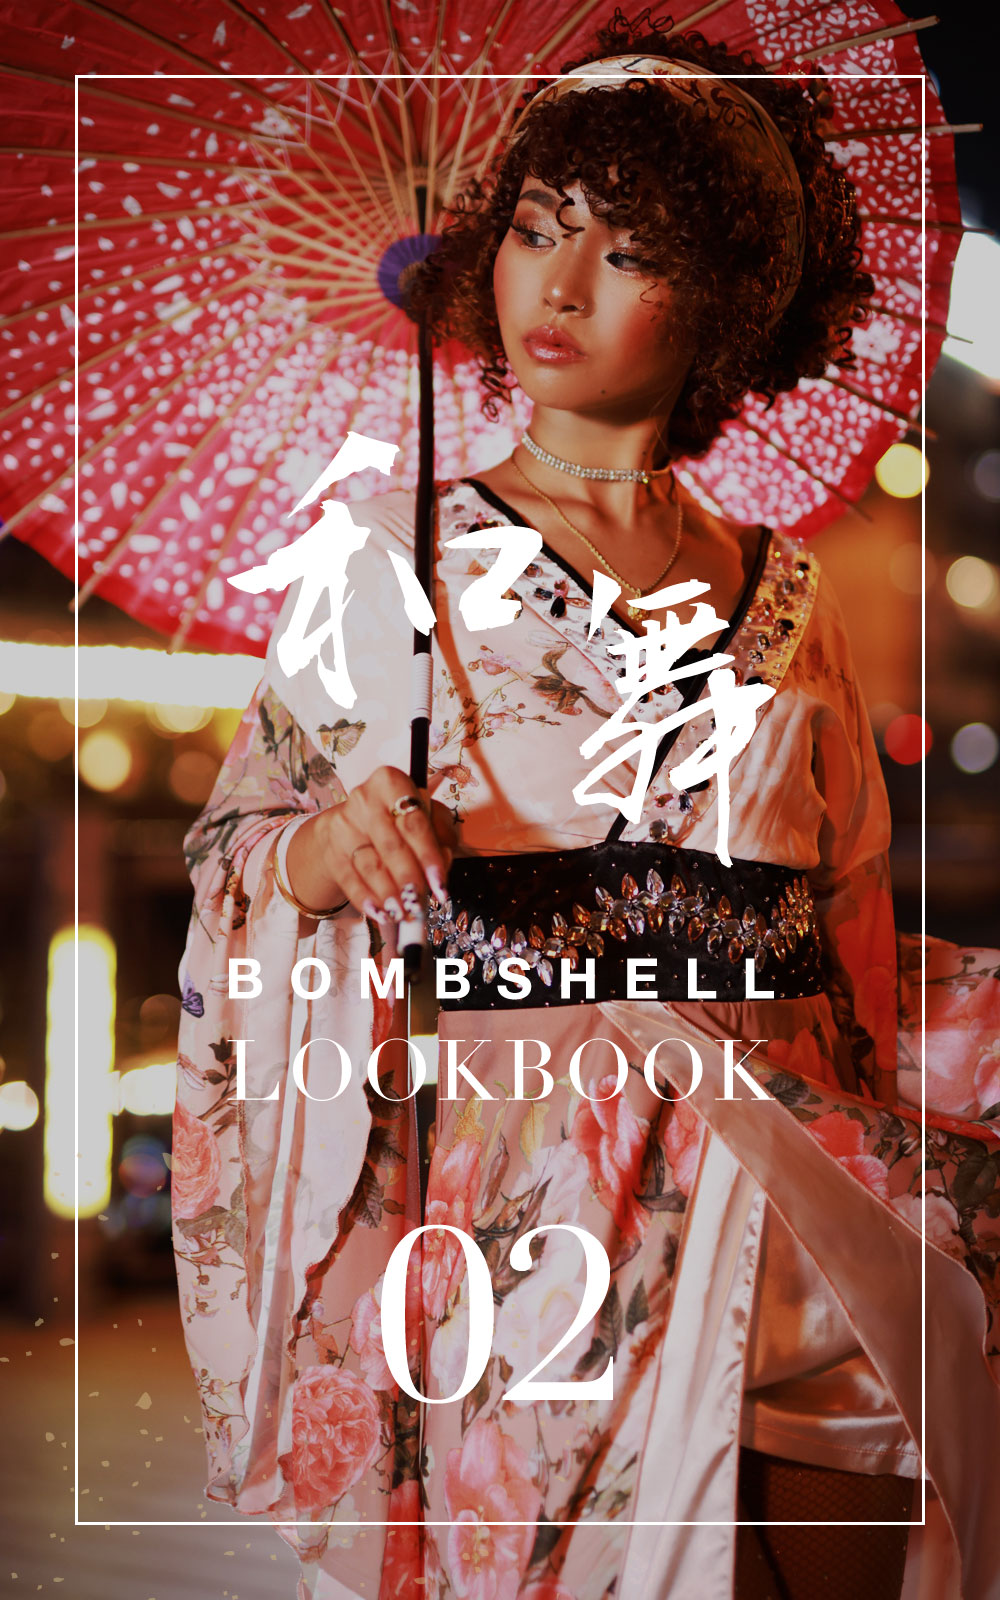 Bombshell look book bombshell Bikini vol.2